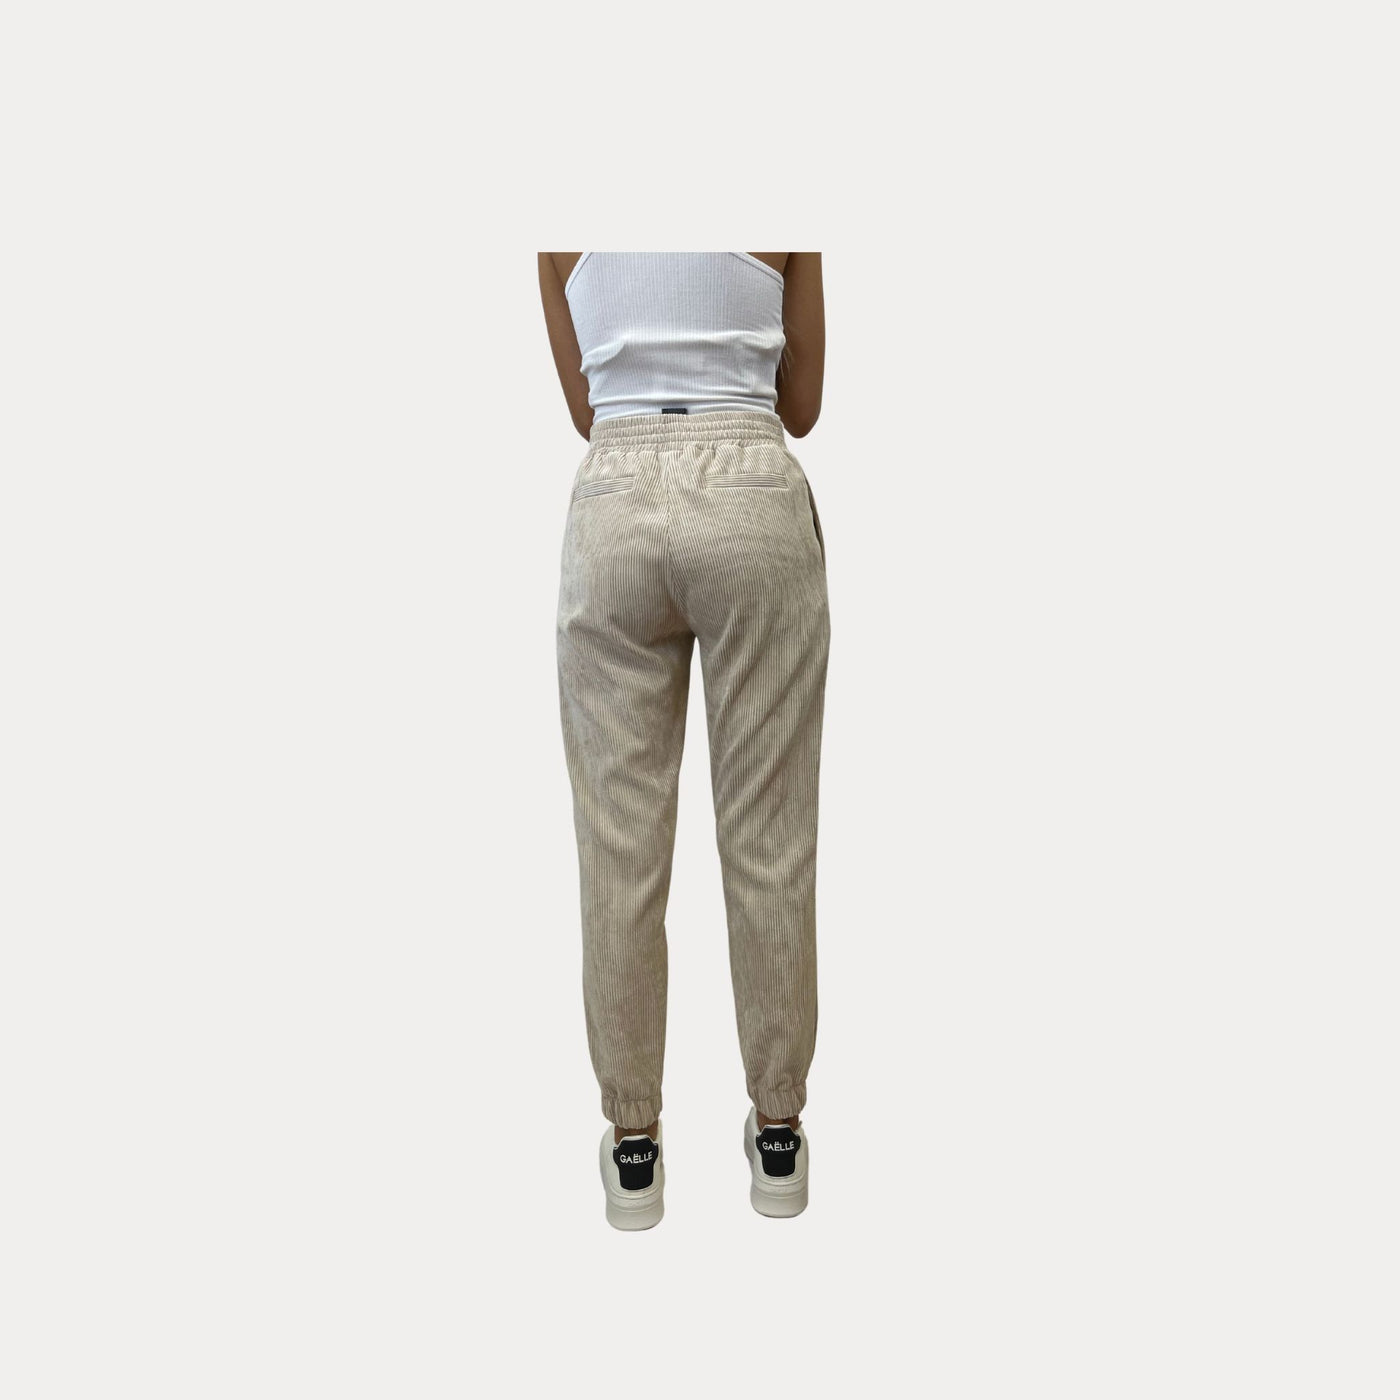 Pantalone Donna con fantasia a righe verticali